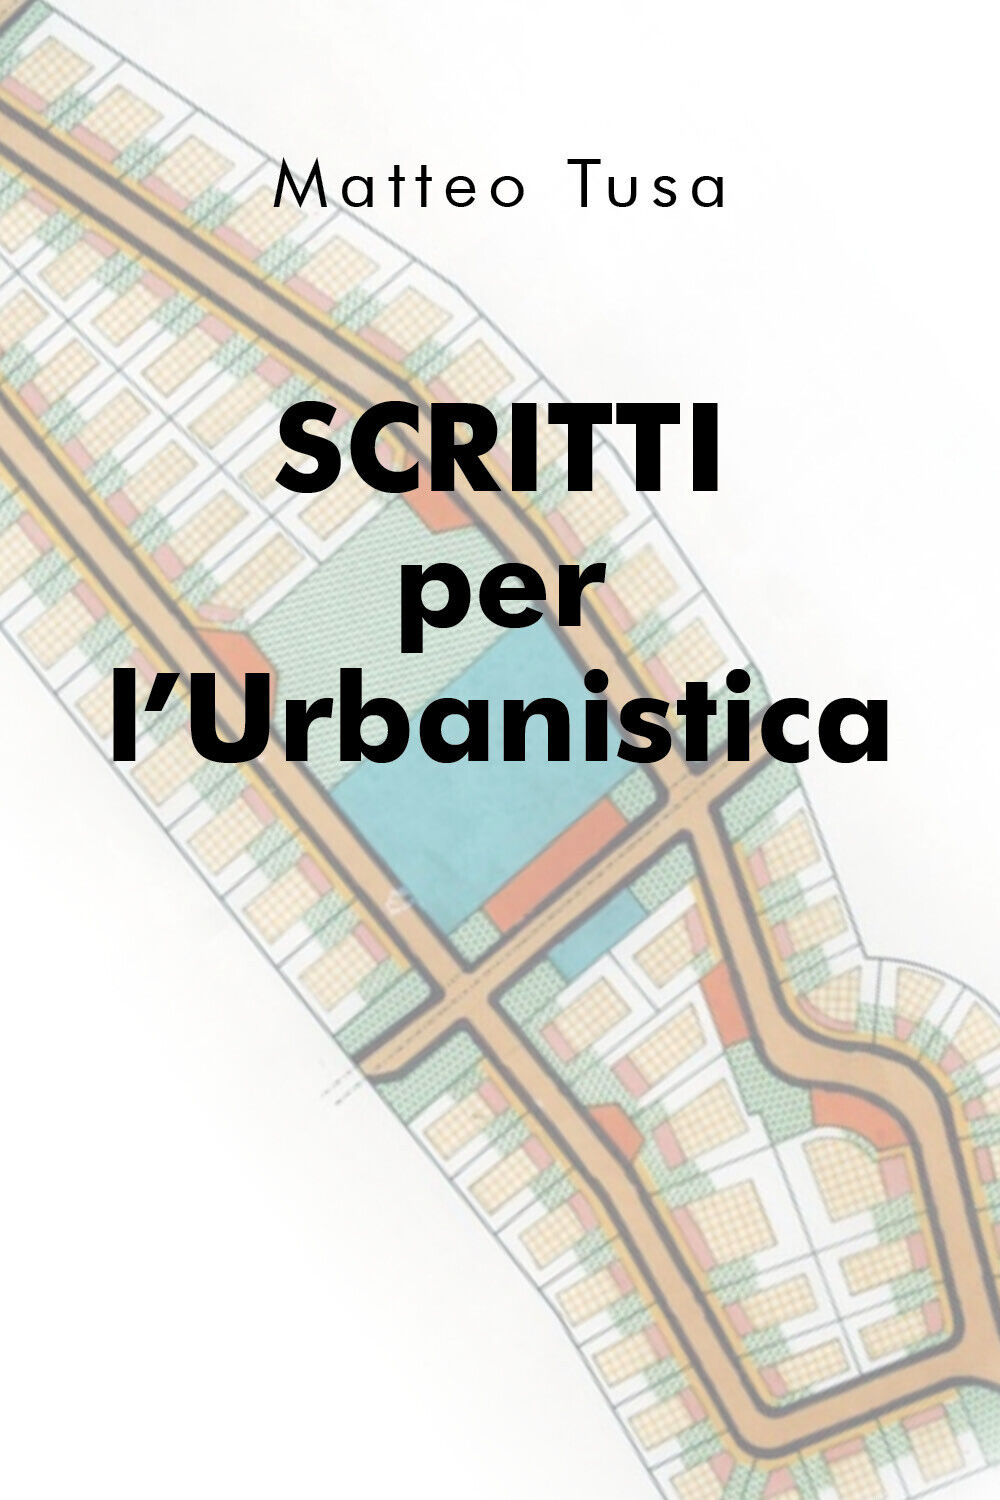 Scritti per L'Urbanistica -  Matteo Tusa,  2020,  Youcanprint